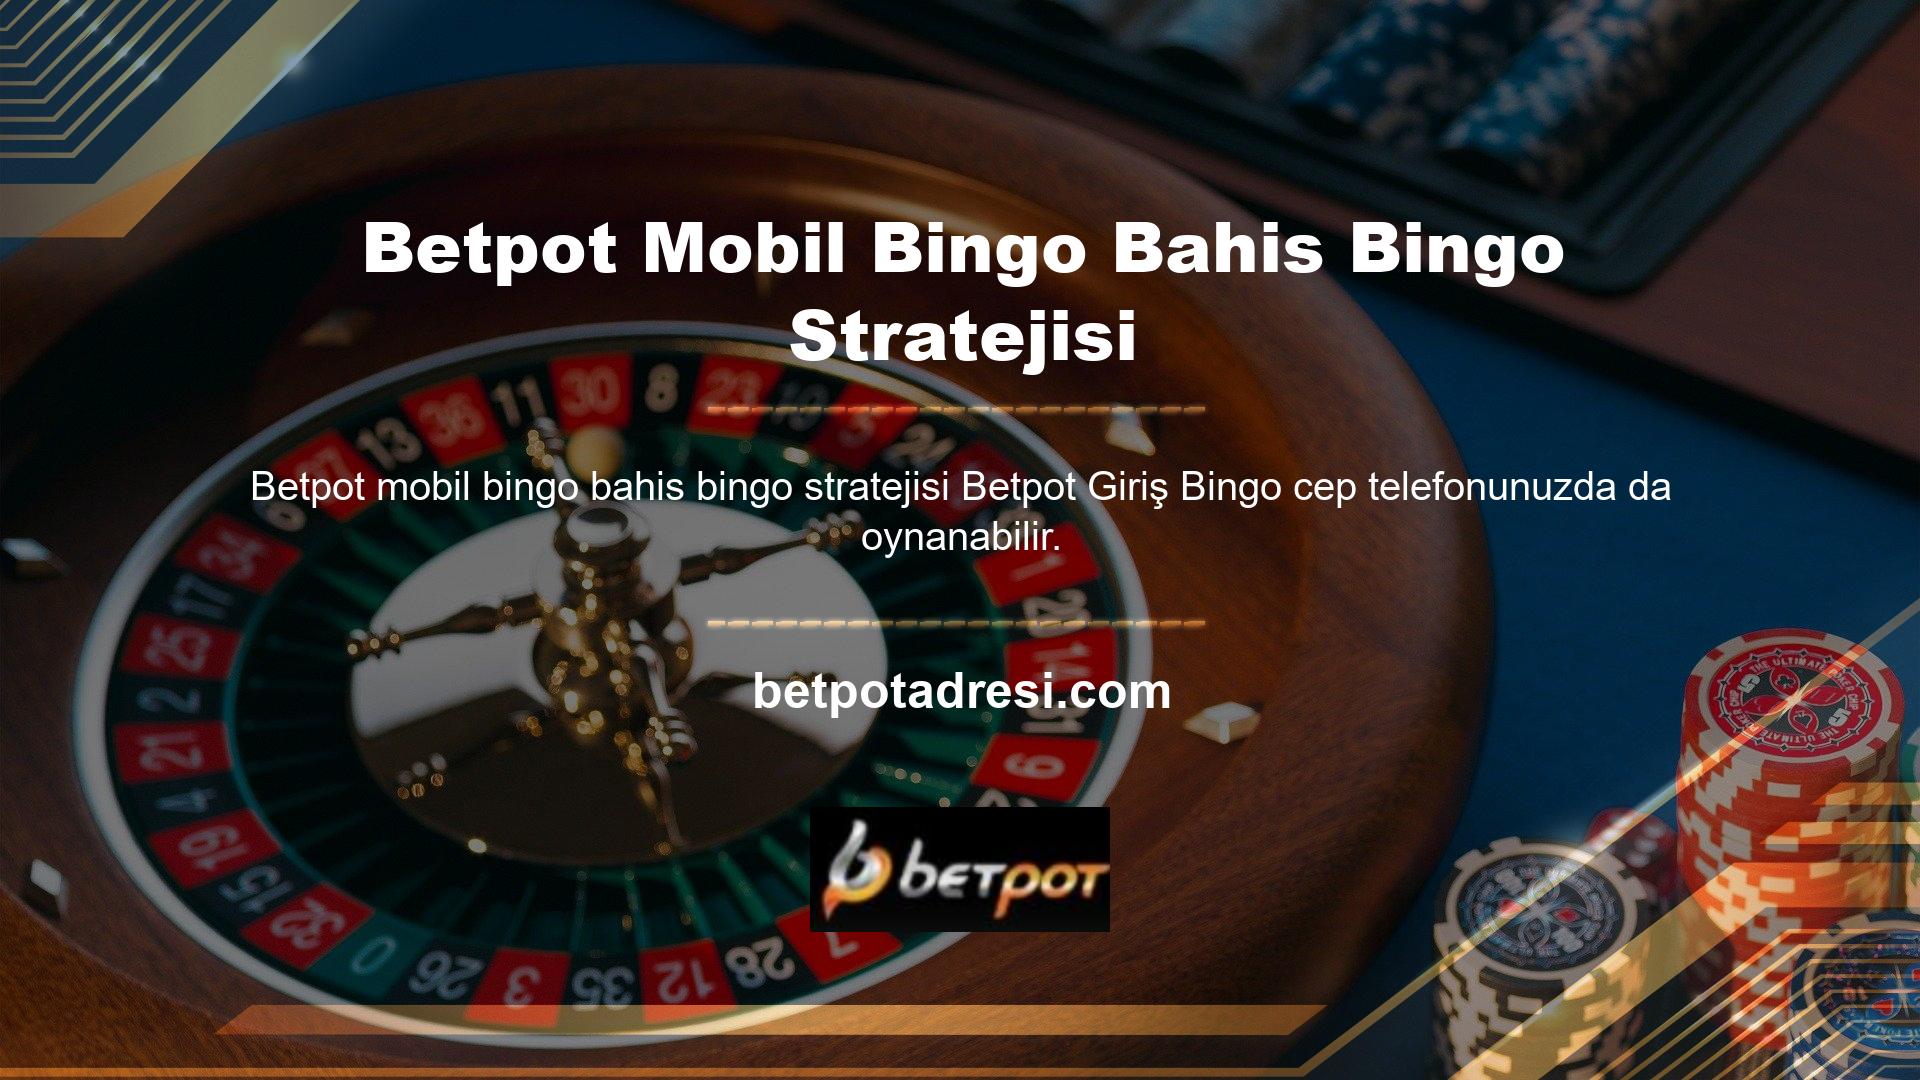 Üyeler, tıpkı Betpot mobil bingo bahis bilgisayarında olduğu gibi, yatırımlarını bingo oyunları oynamaya başlamak için kullanabilirler